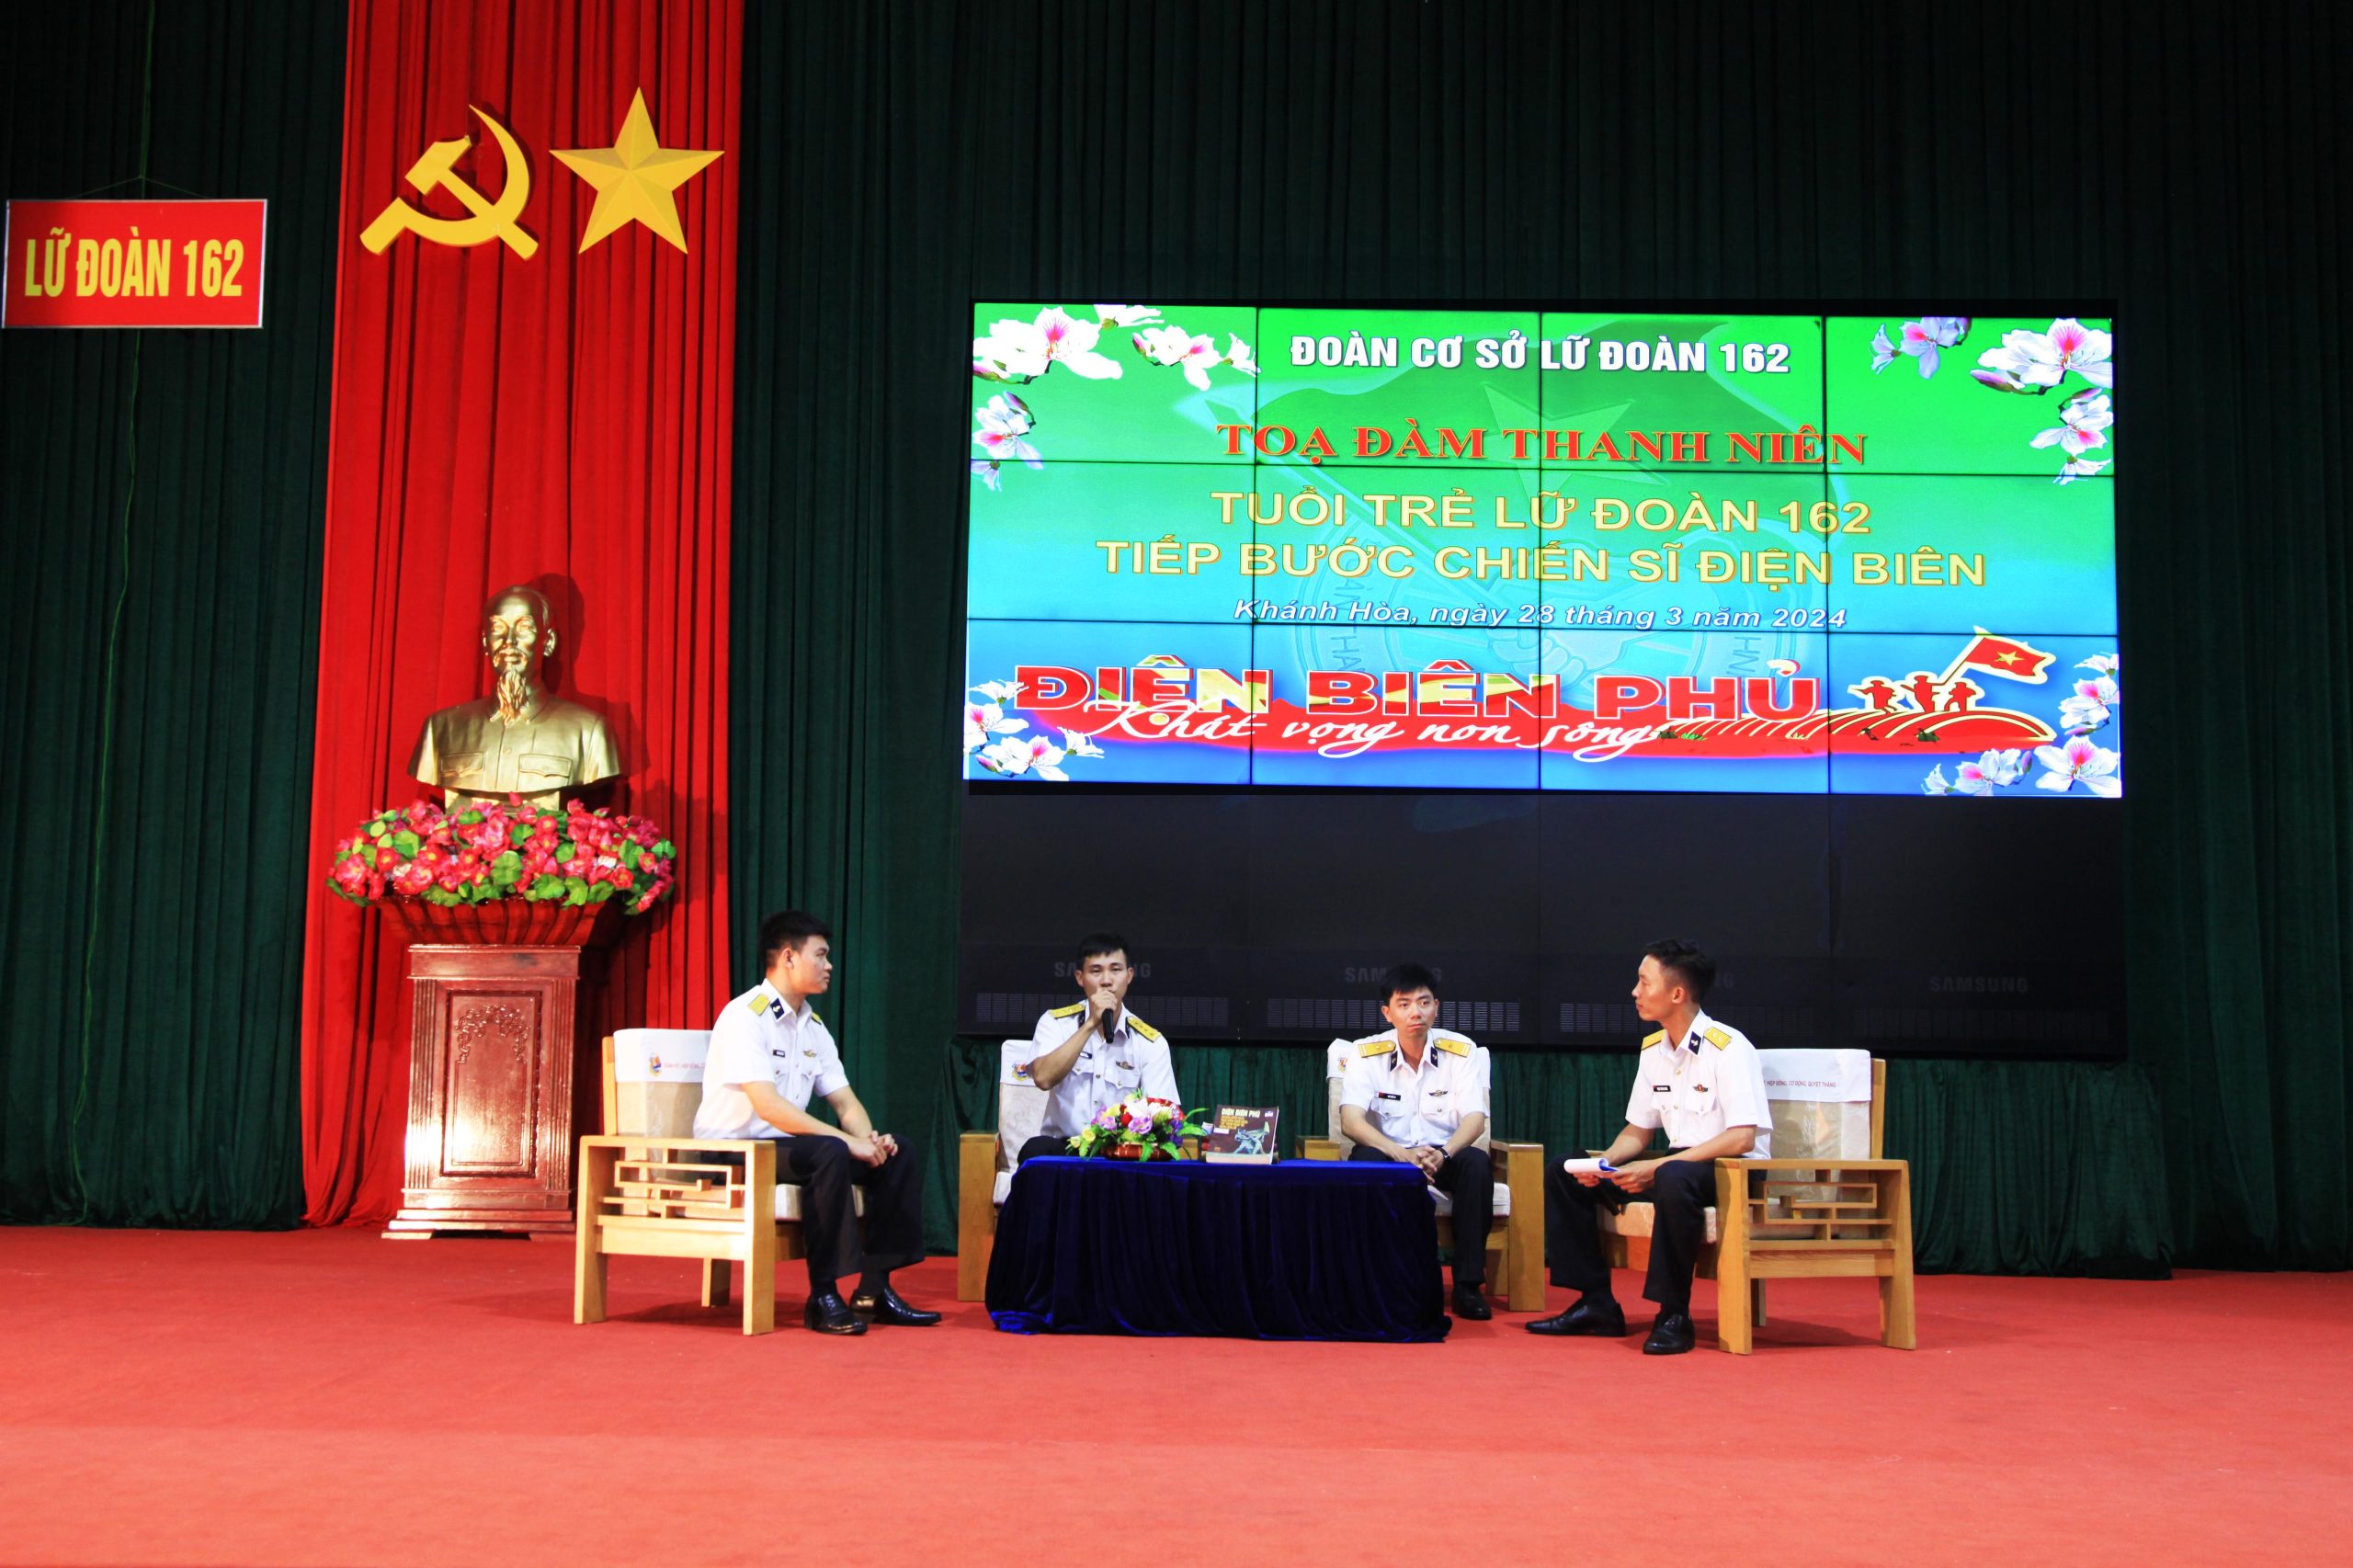 Tọa đàm Thanh niên  “Tuổi trẻ Lữ đoàn 162 tiếp bước chiến sĩ Điện Biên”.